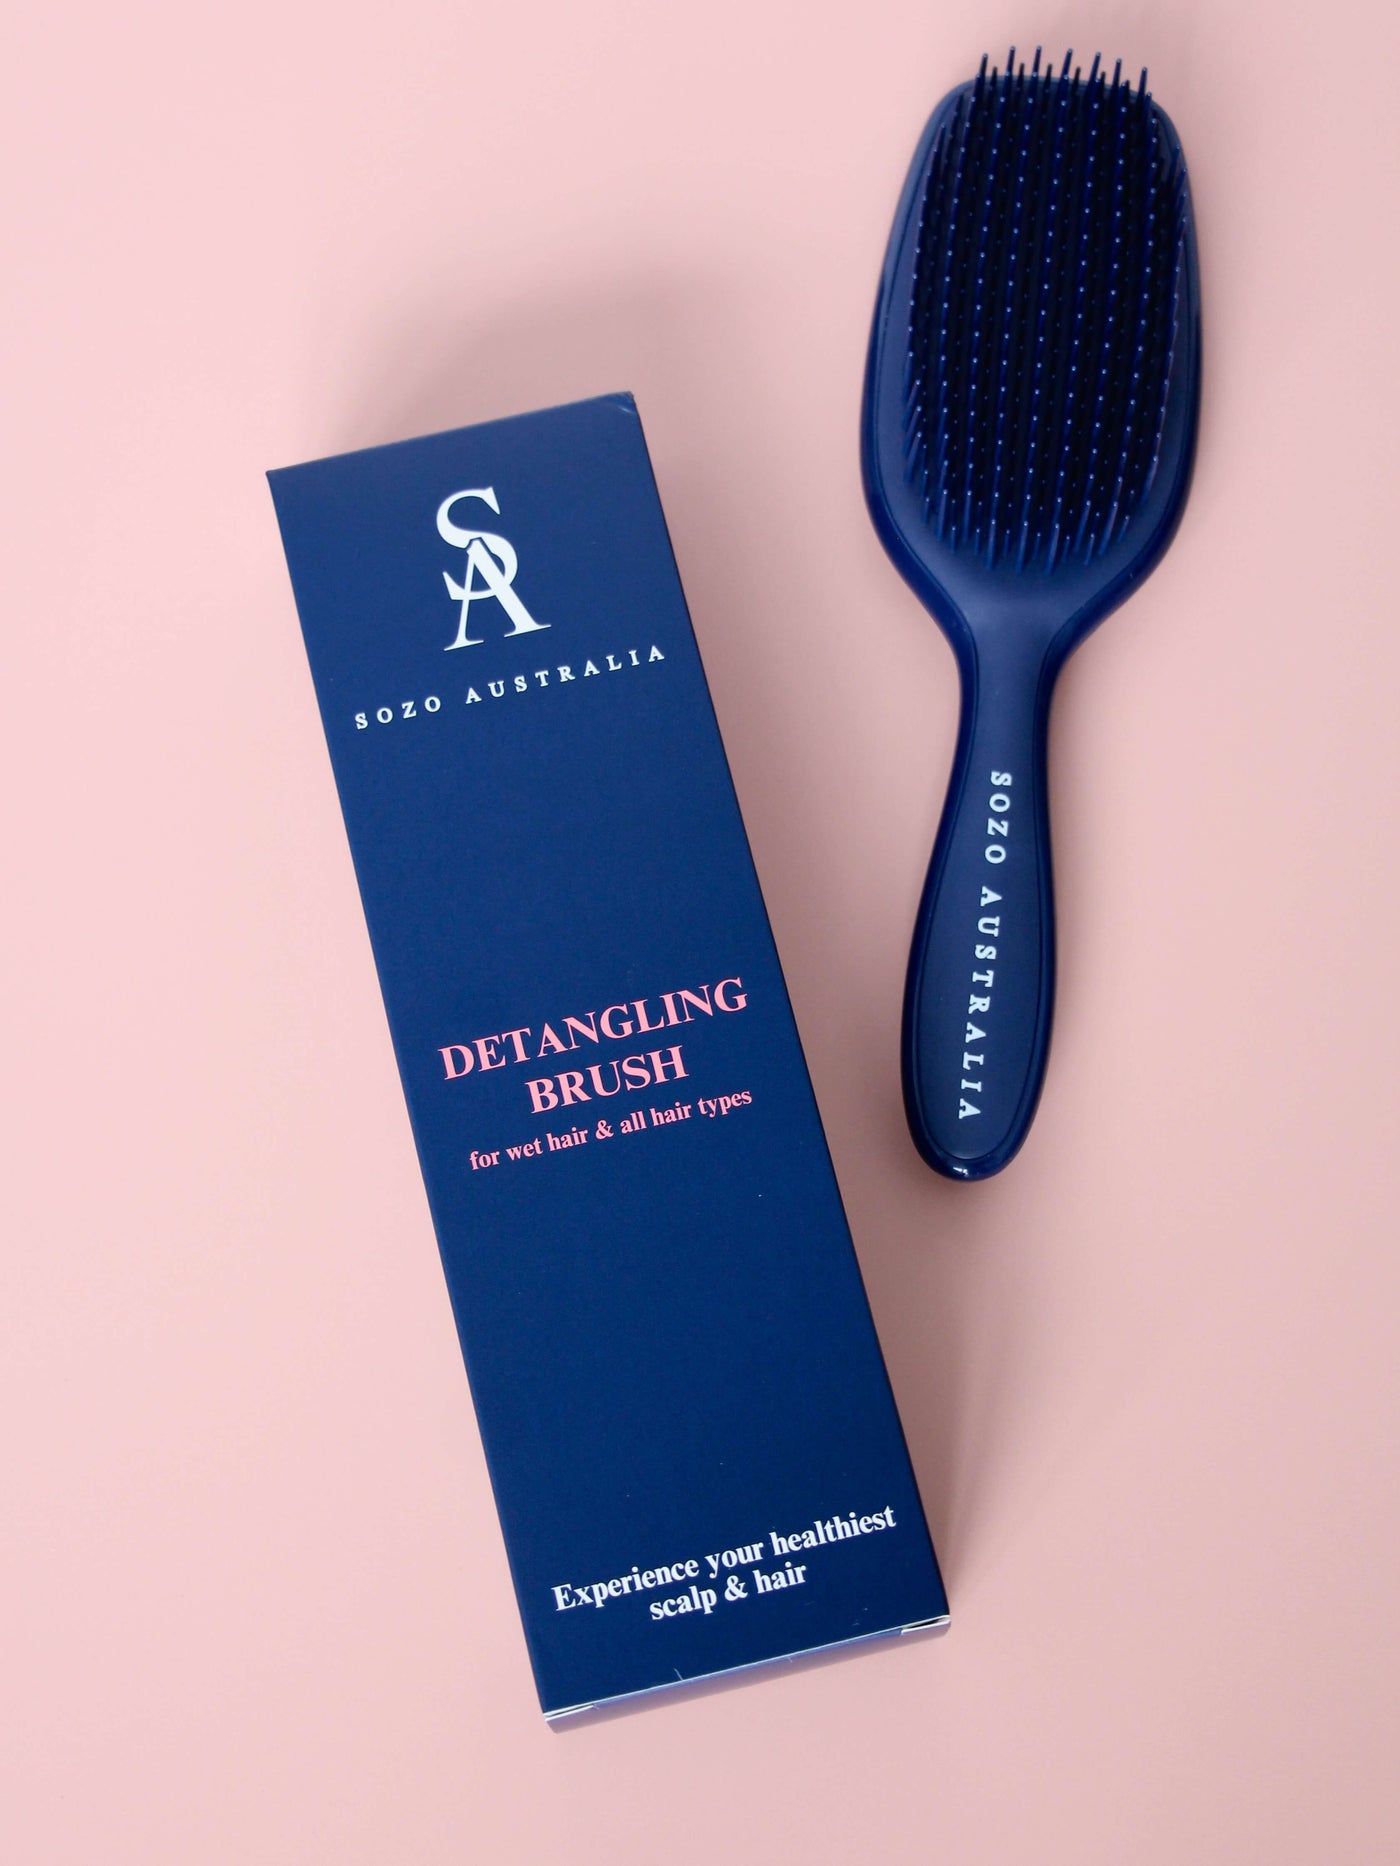 Detangling hairbrush and box for wet hair